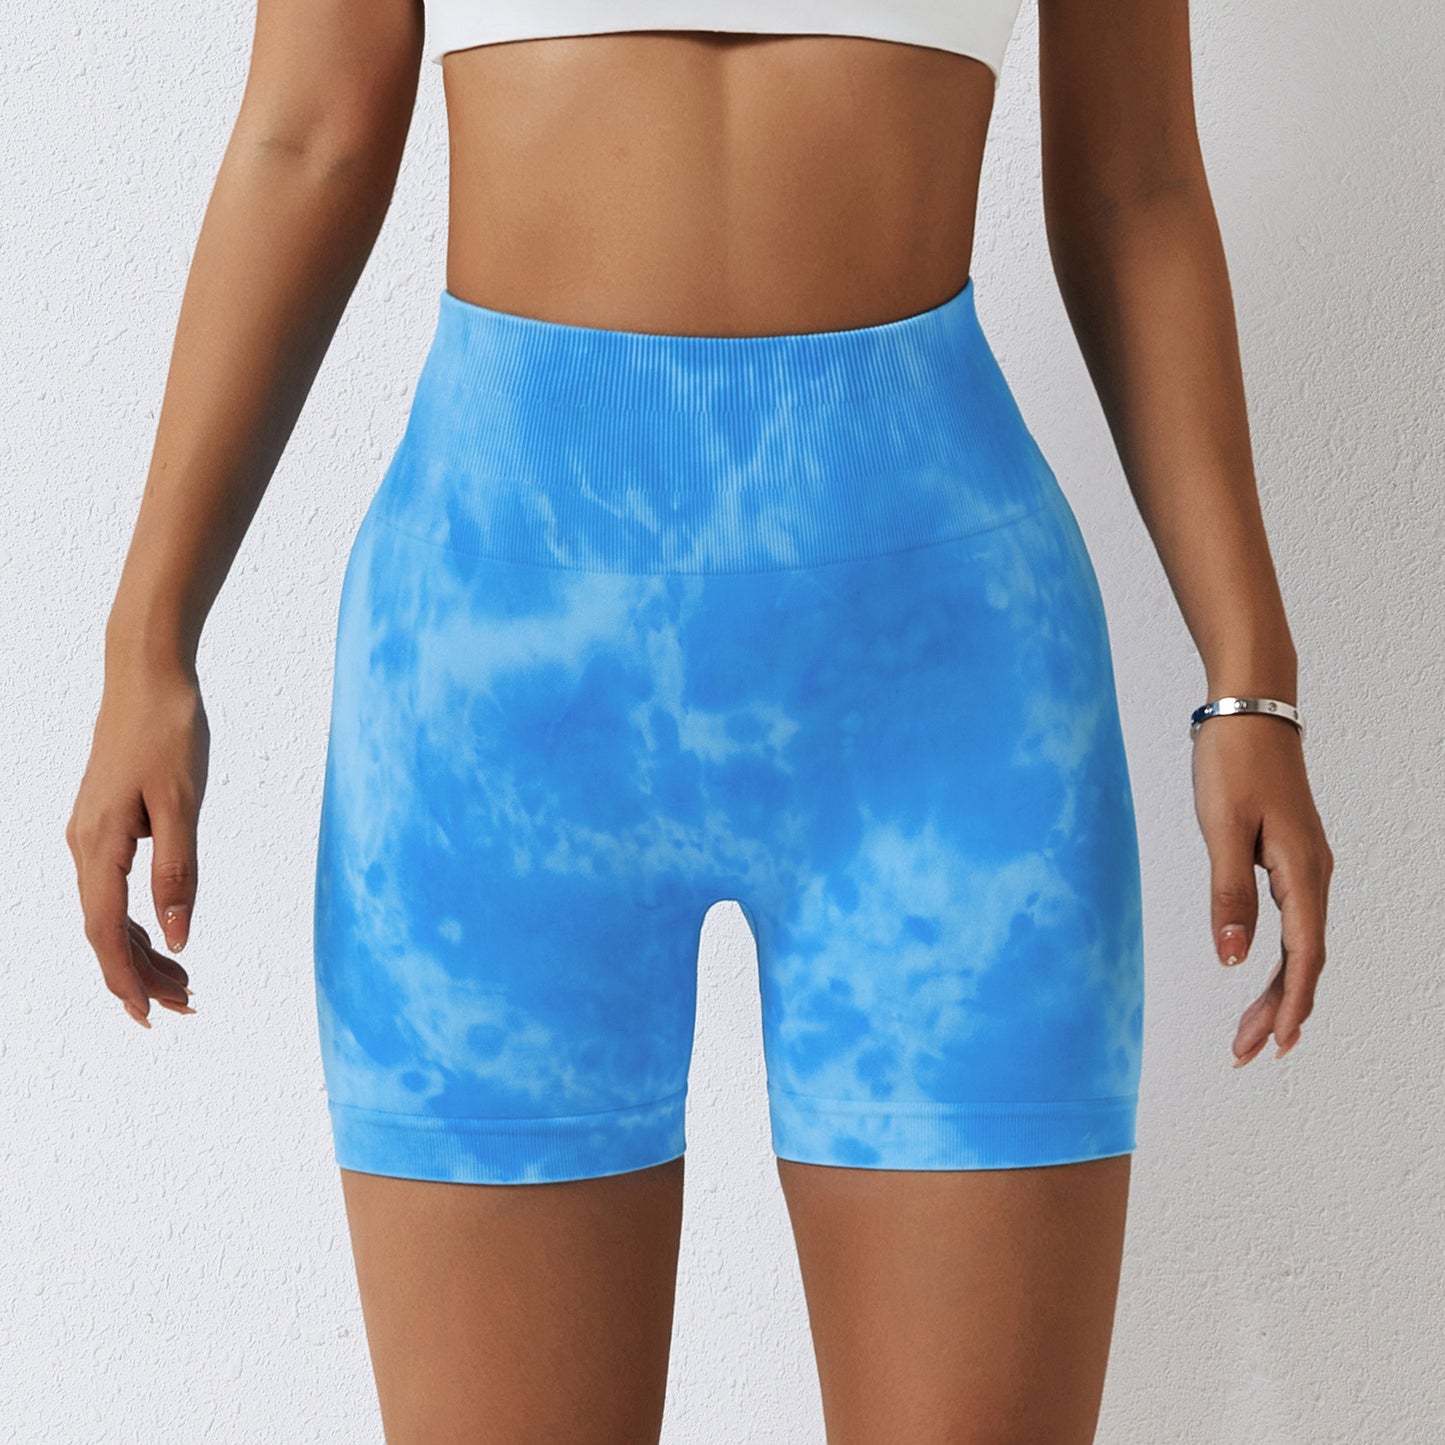 Printemps Splash teinture sans couture Yoga Shorts femmes sport Fitness Shorts taille haute hanche ascenseur pantalon de Yoga maigre